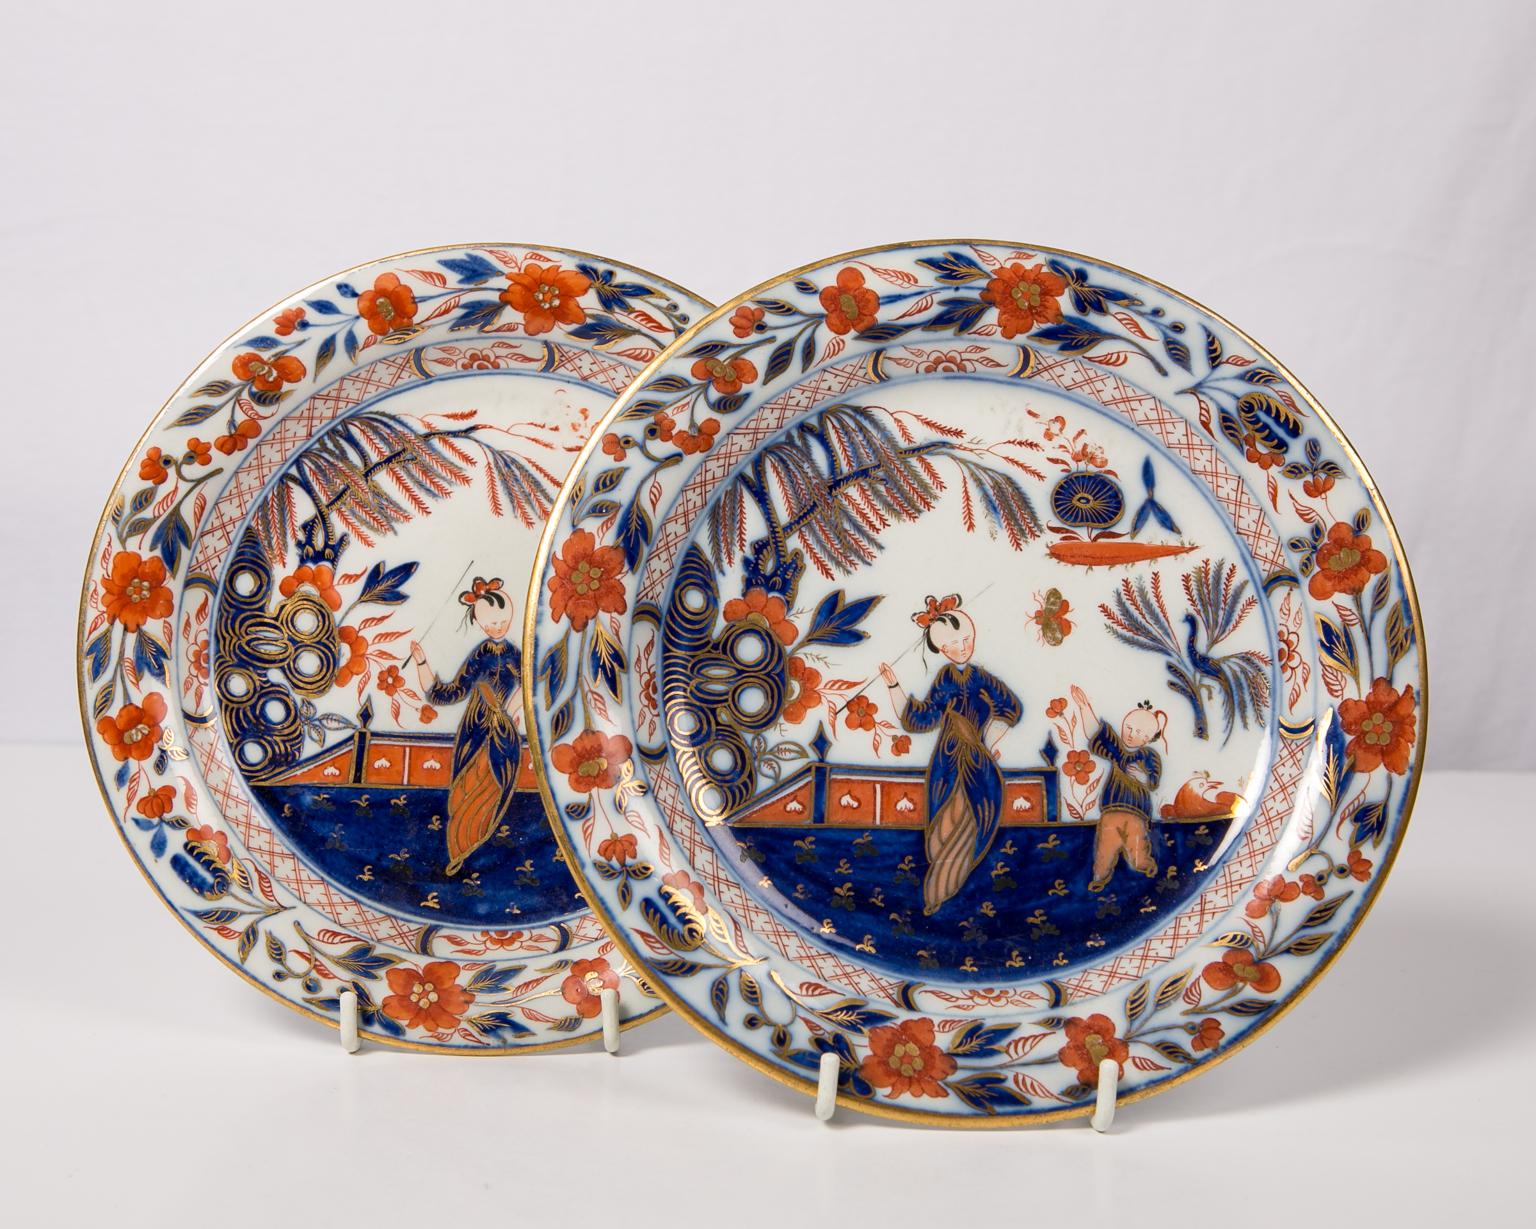 Hand-Painted Pair English Imari Dishes Made by Davenport Circa 1820